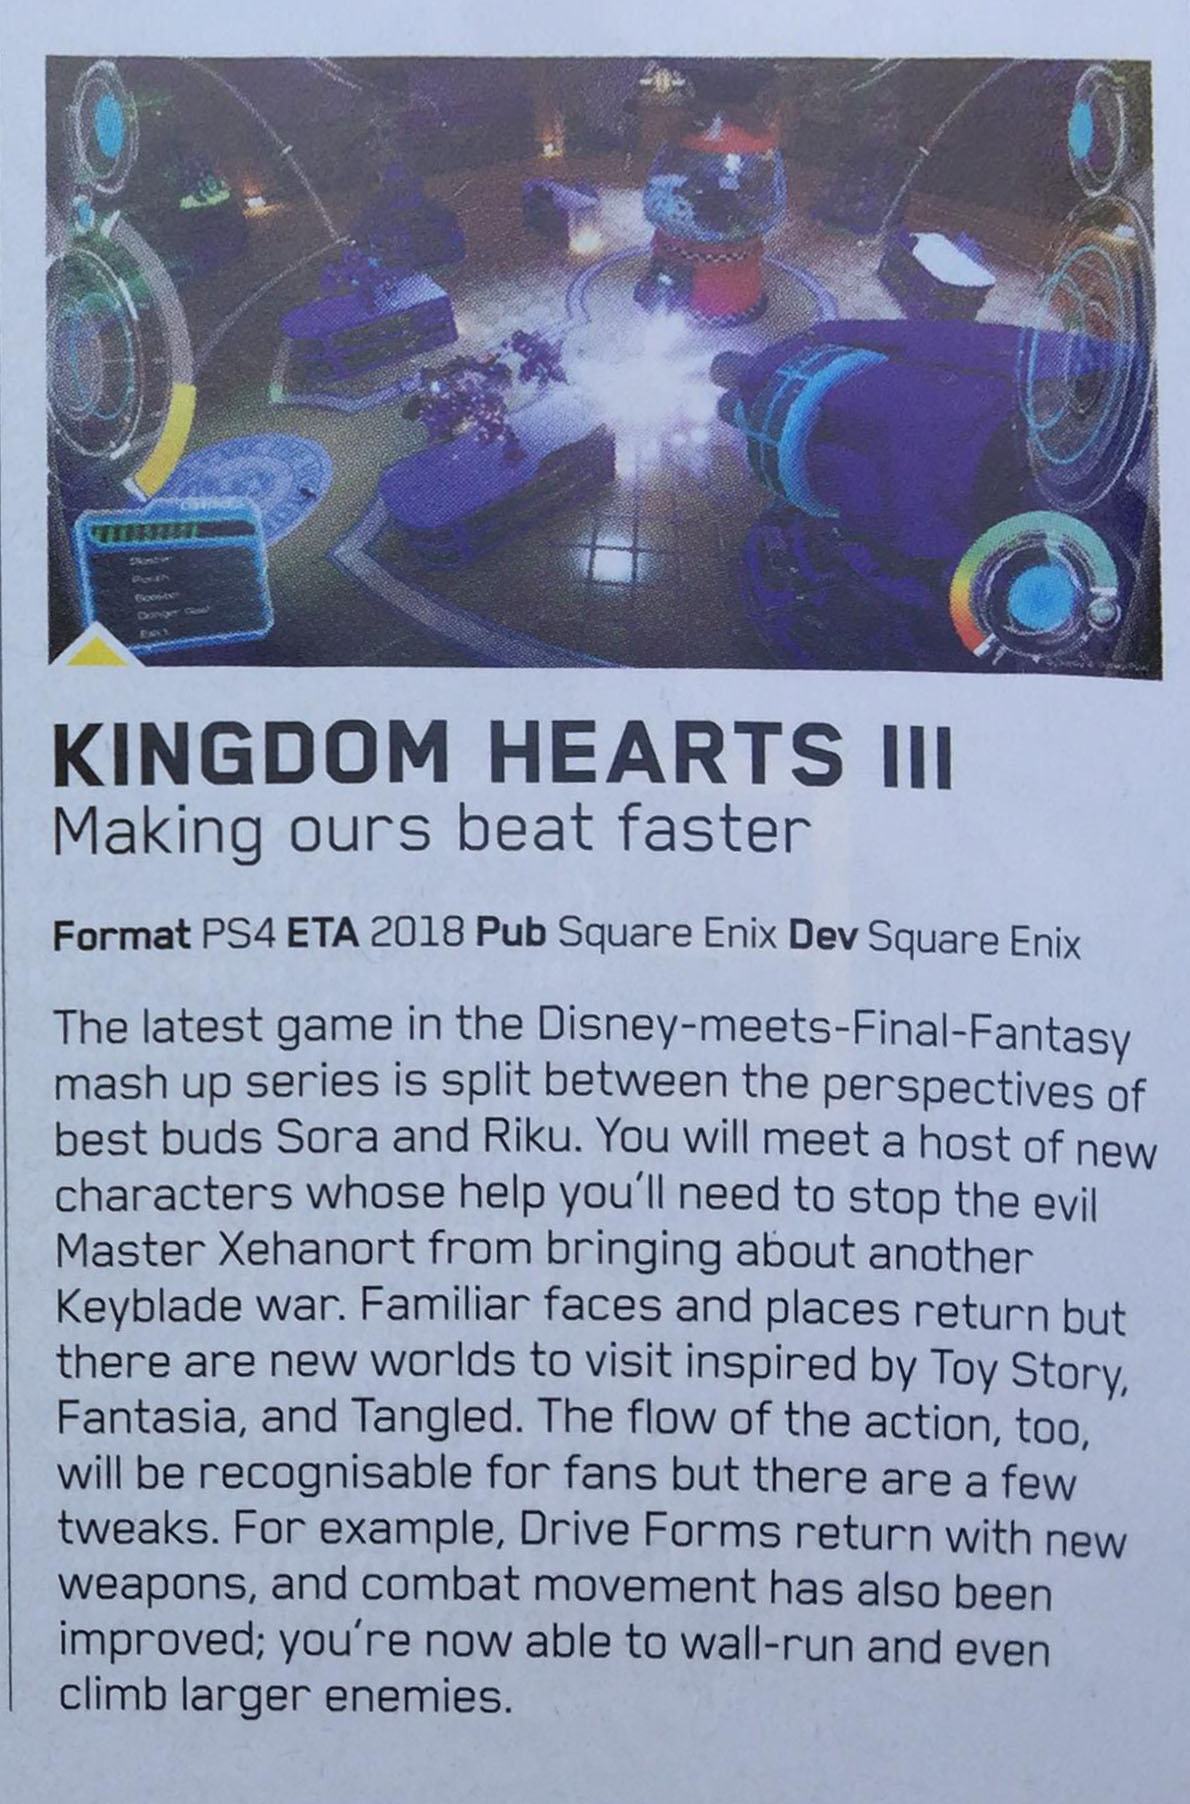 Riku giocabile e il mondo di Fantasia in Kingdom Hearts 3? 2